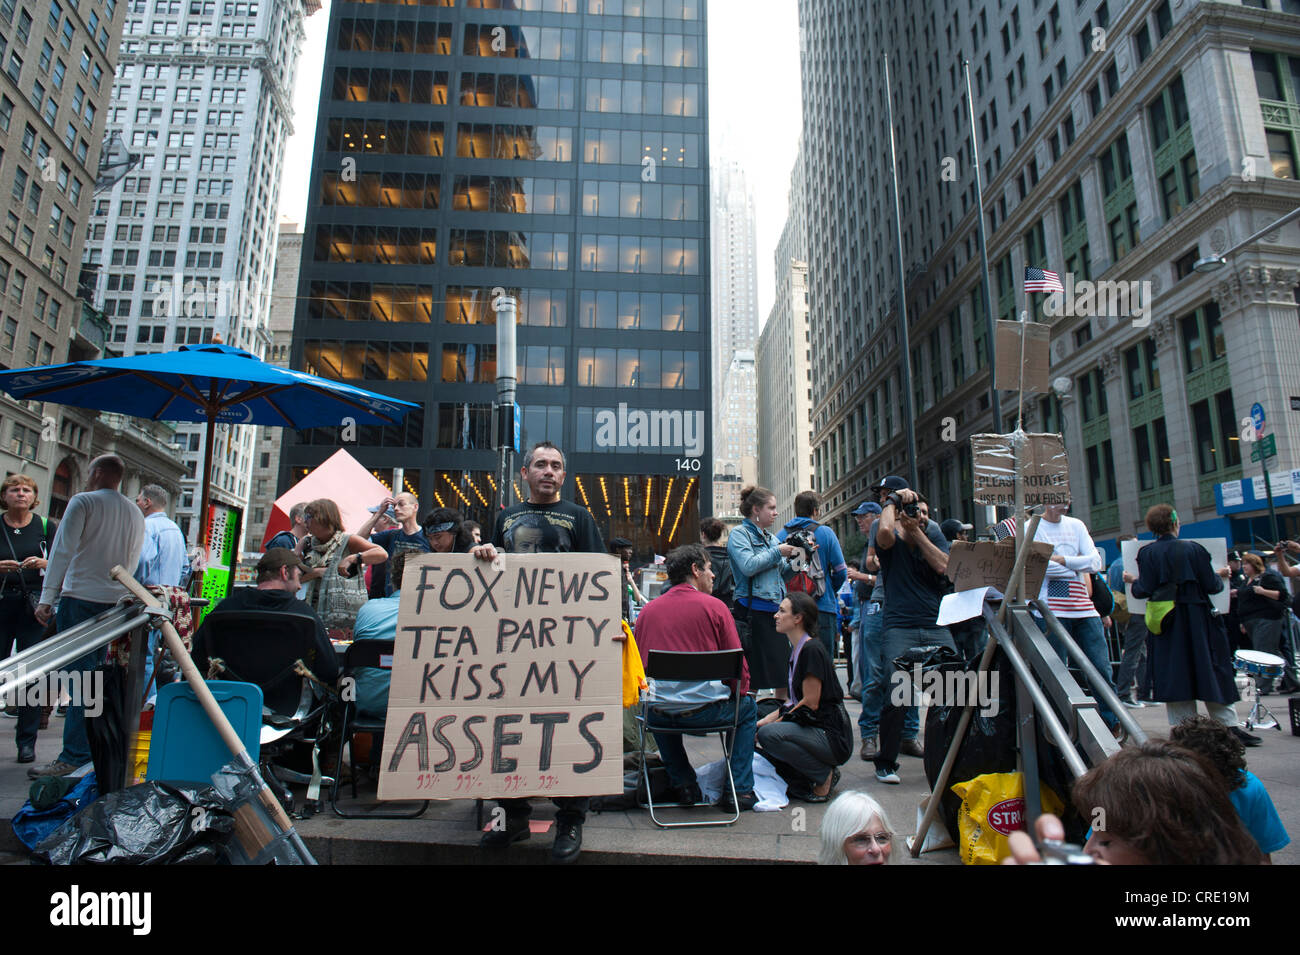 Demokratie, Protest, Occupy Wall Street Bewegung, Demonstrant mit einem Schild, Schriftzug "Fox News Tea Party kiss mein Vermögen" Stockfoto